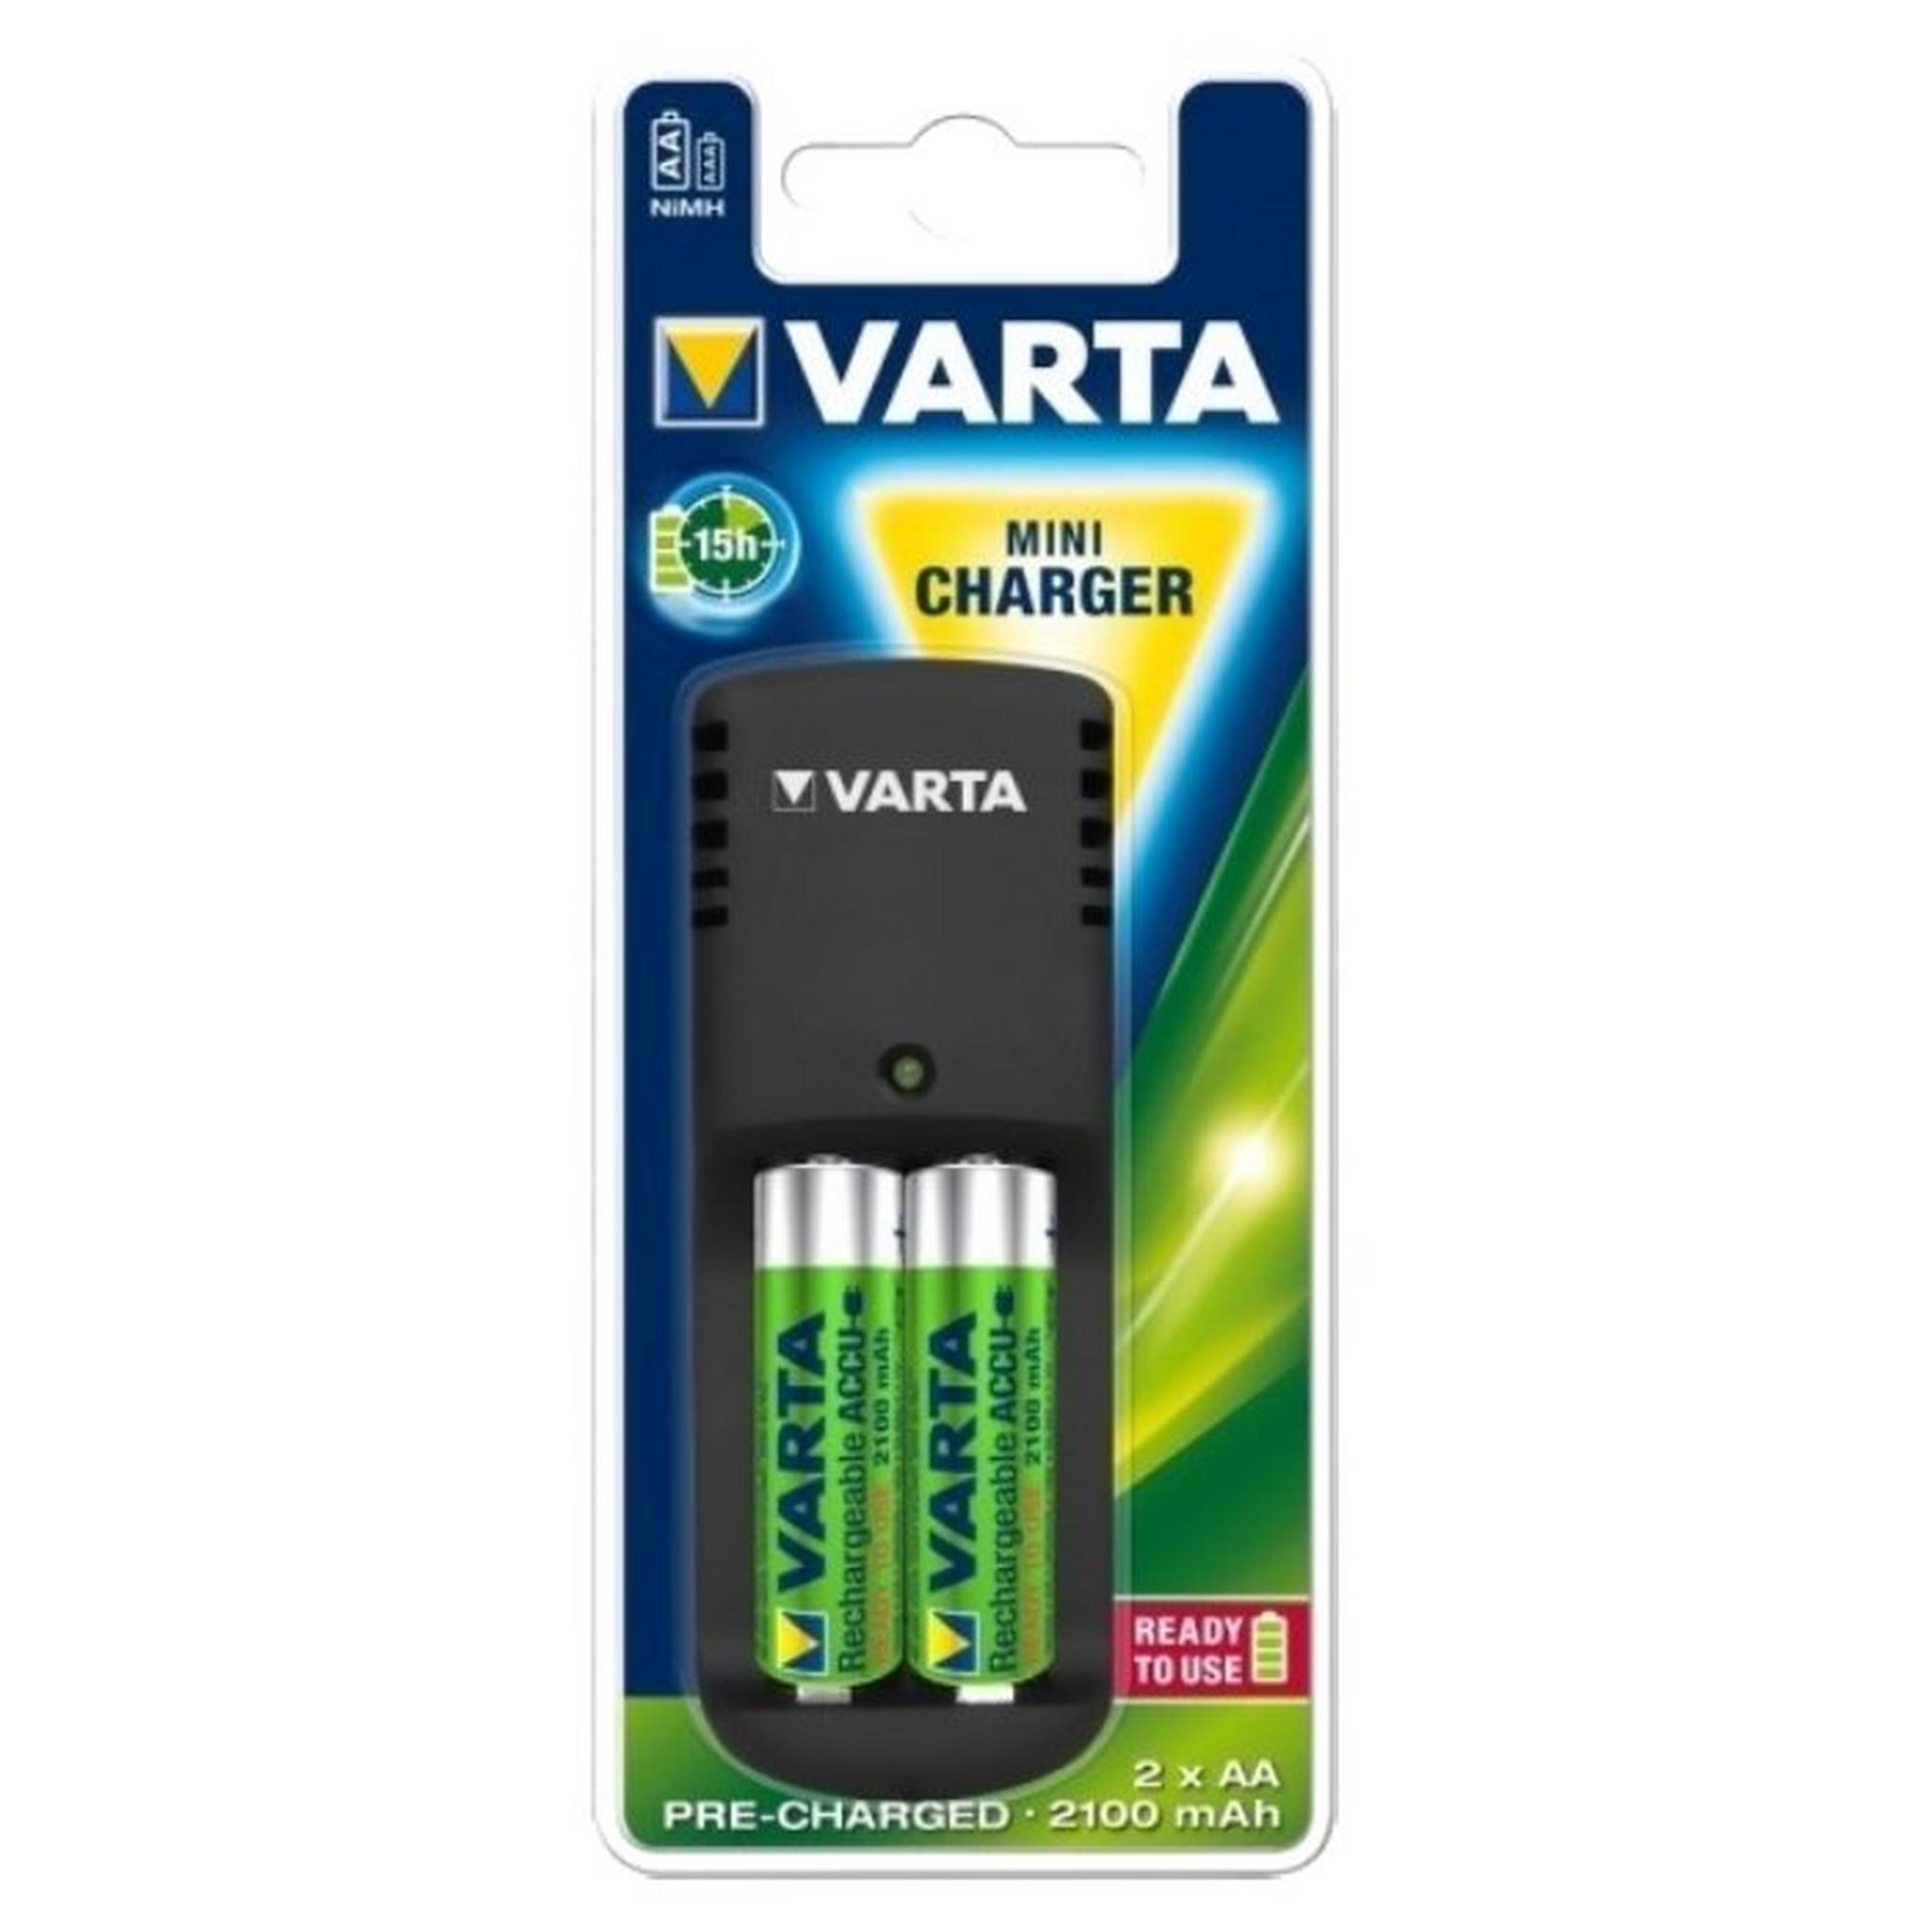 Varta E Mini Charger Universal Battery